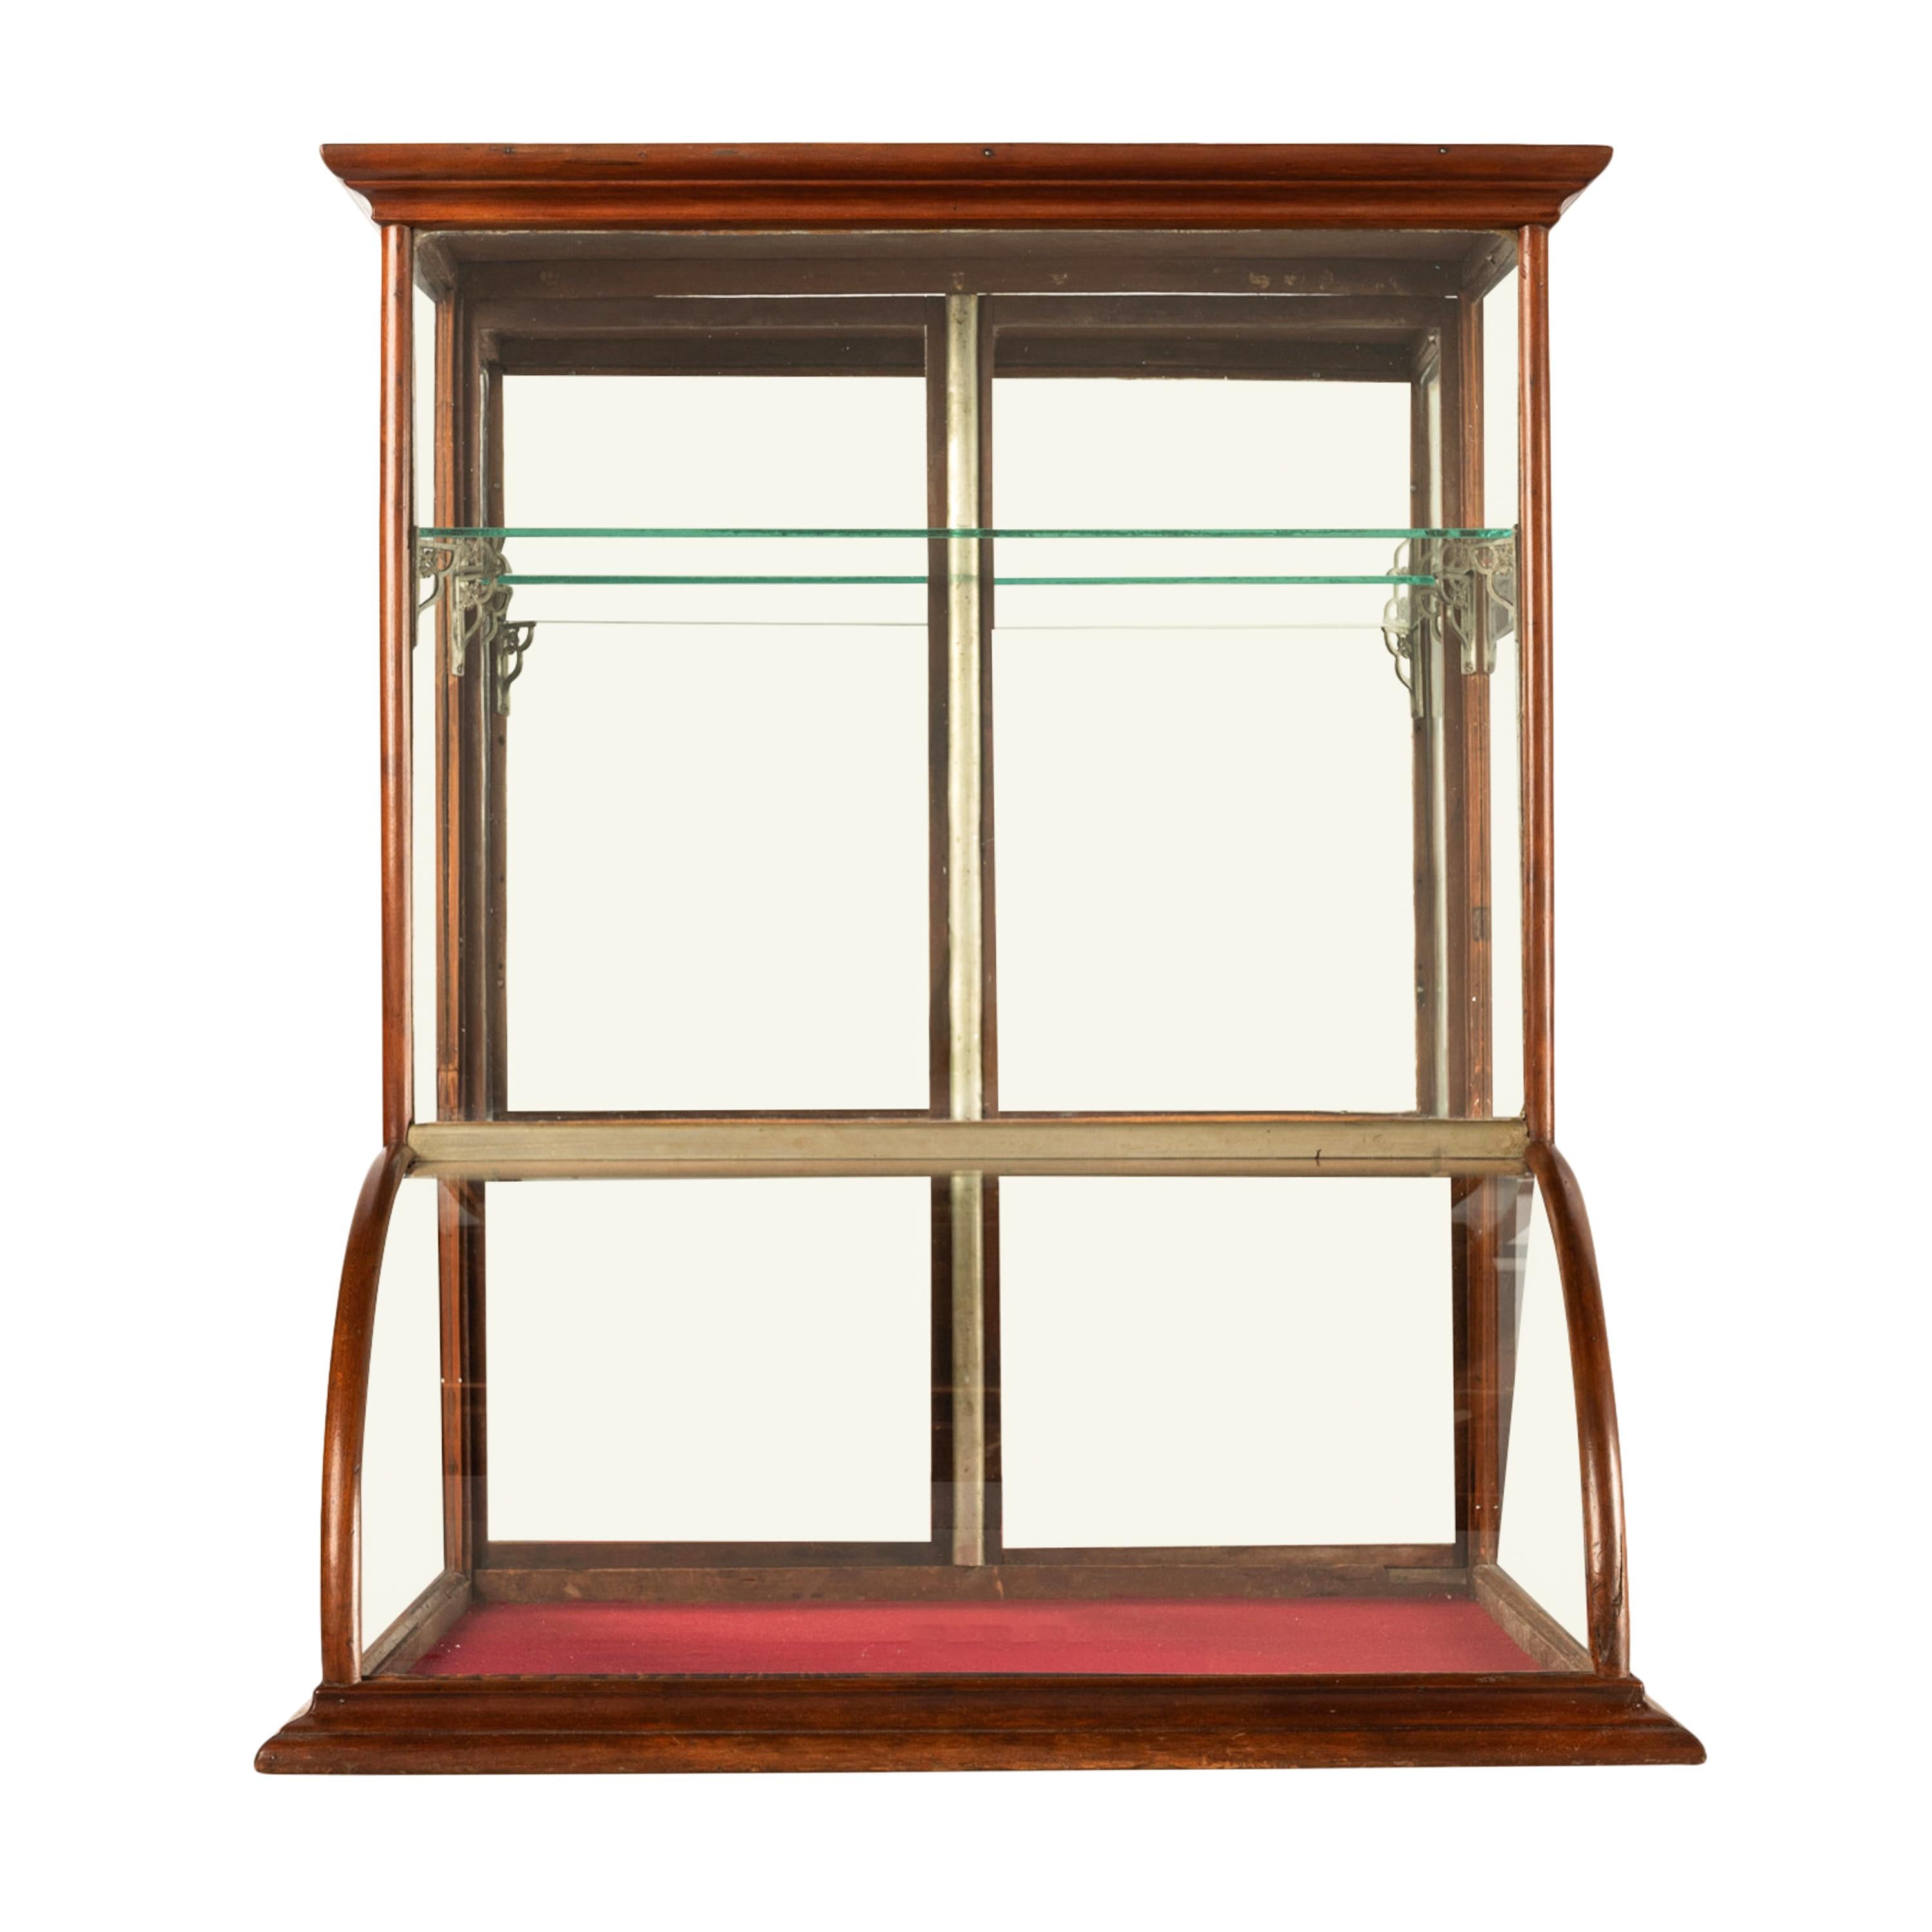 Très belle vitrine de comptoir en chêne américain et verre bombé, vers 1900.
La vitrine présente une couronne étagée et une paire de portes à l'arrière avec les loquets de verrouillage d'origine, à l'intérieur se trouvent deux étagères en verre,